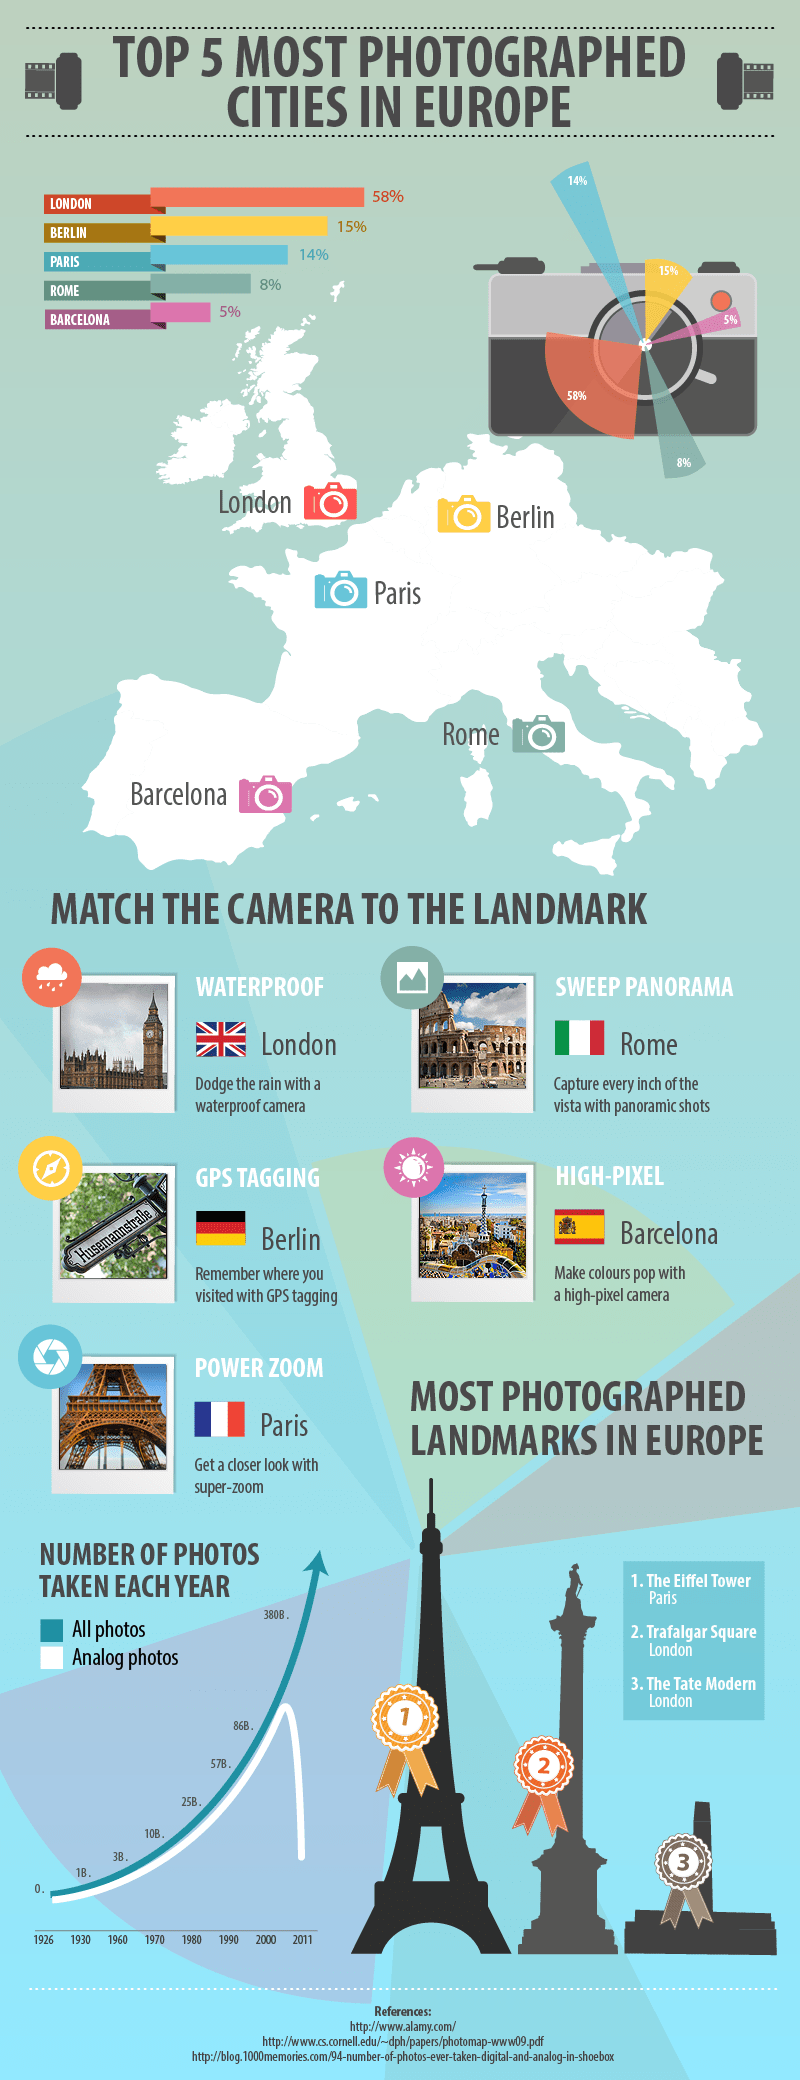 las 5 ciudades más fotografiadas de Europa